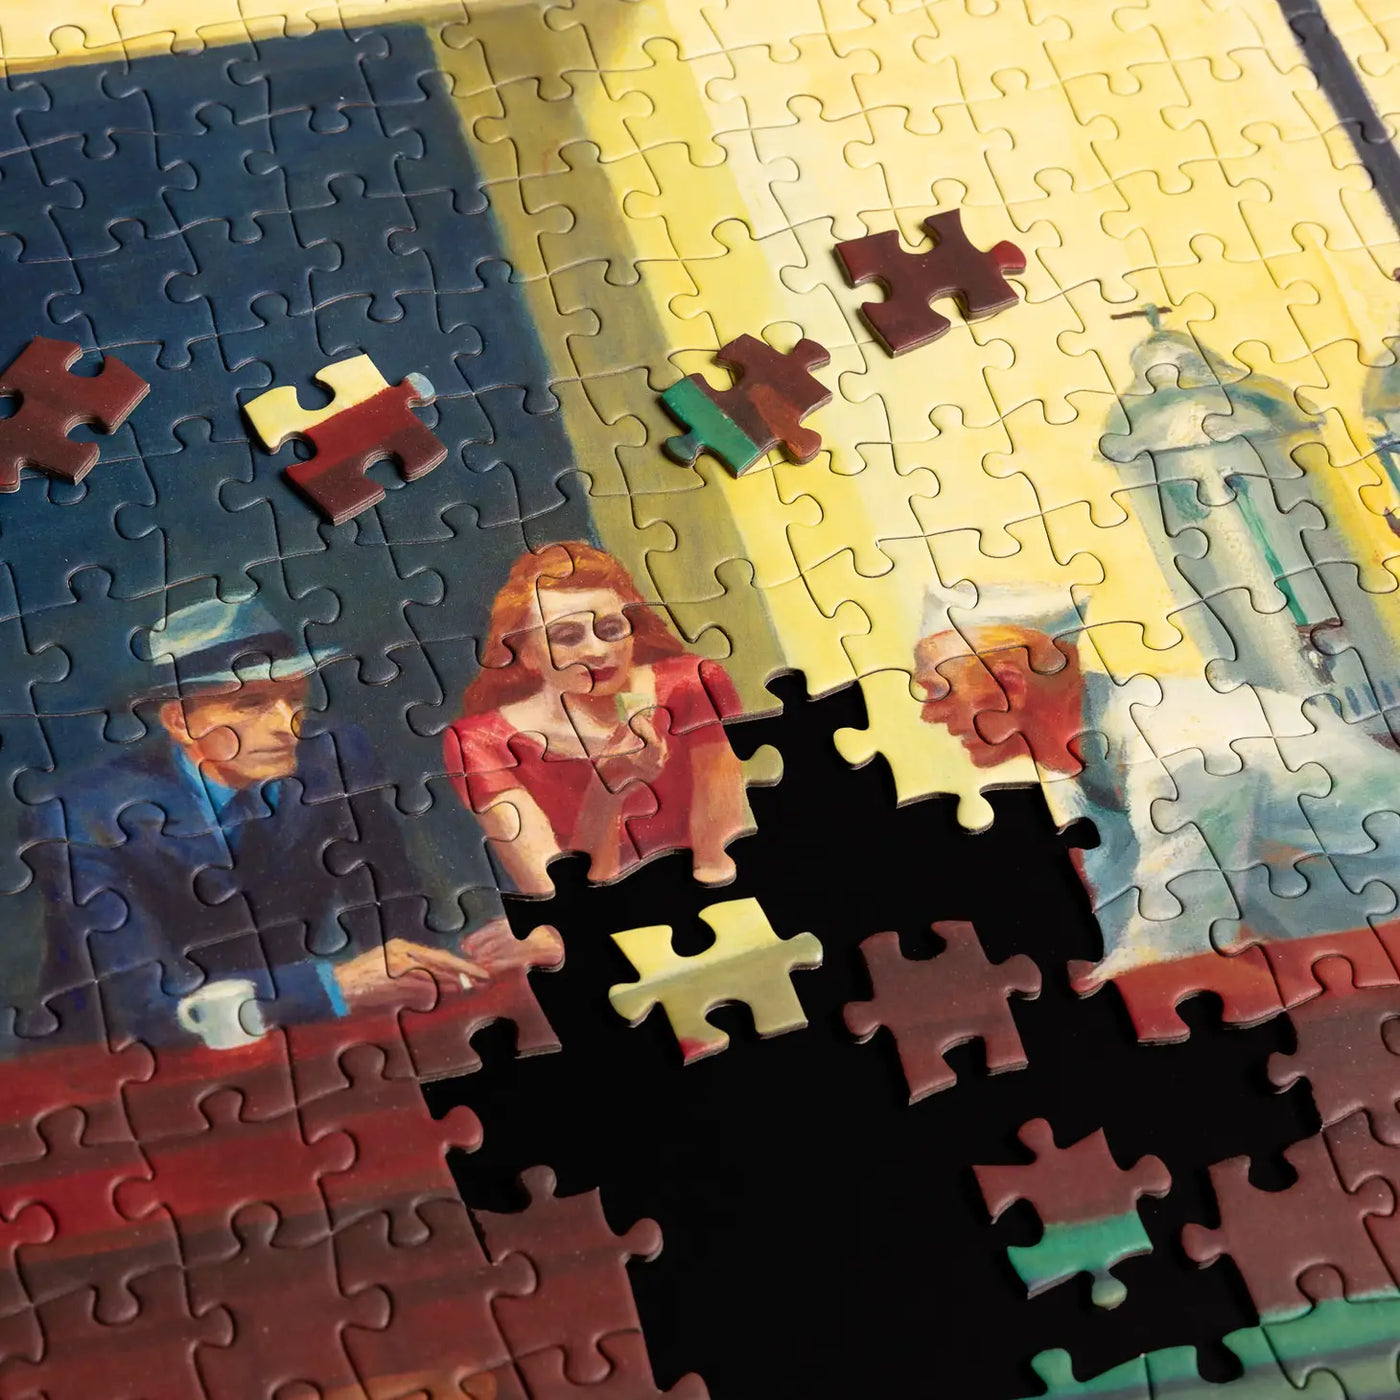 Edward Hopper - Nighthawks Puzzle